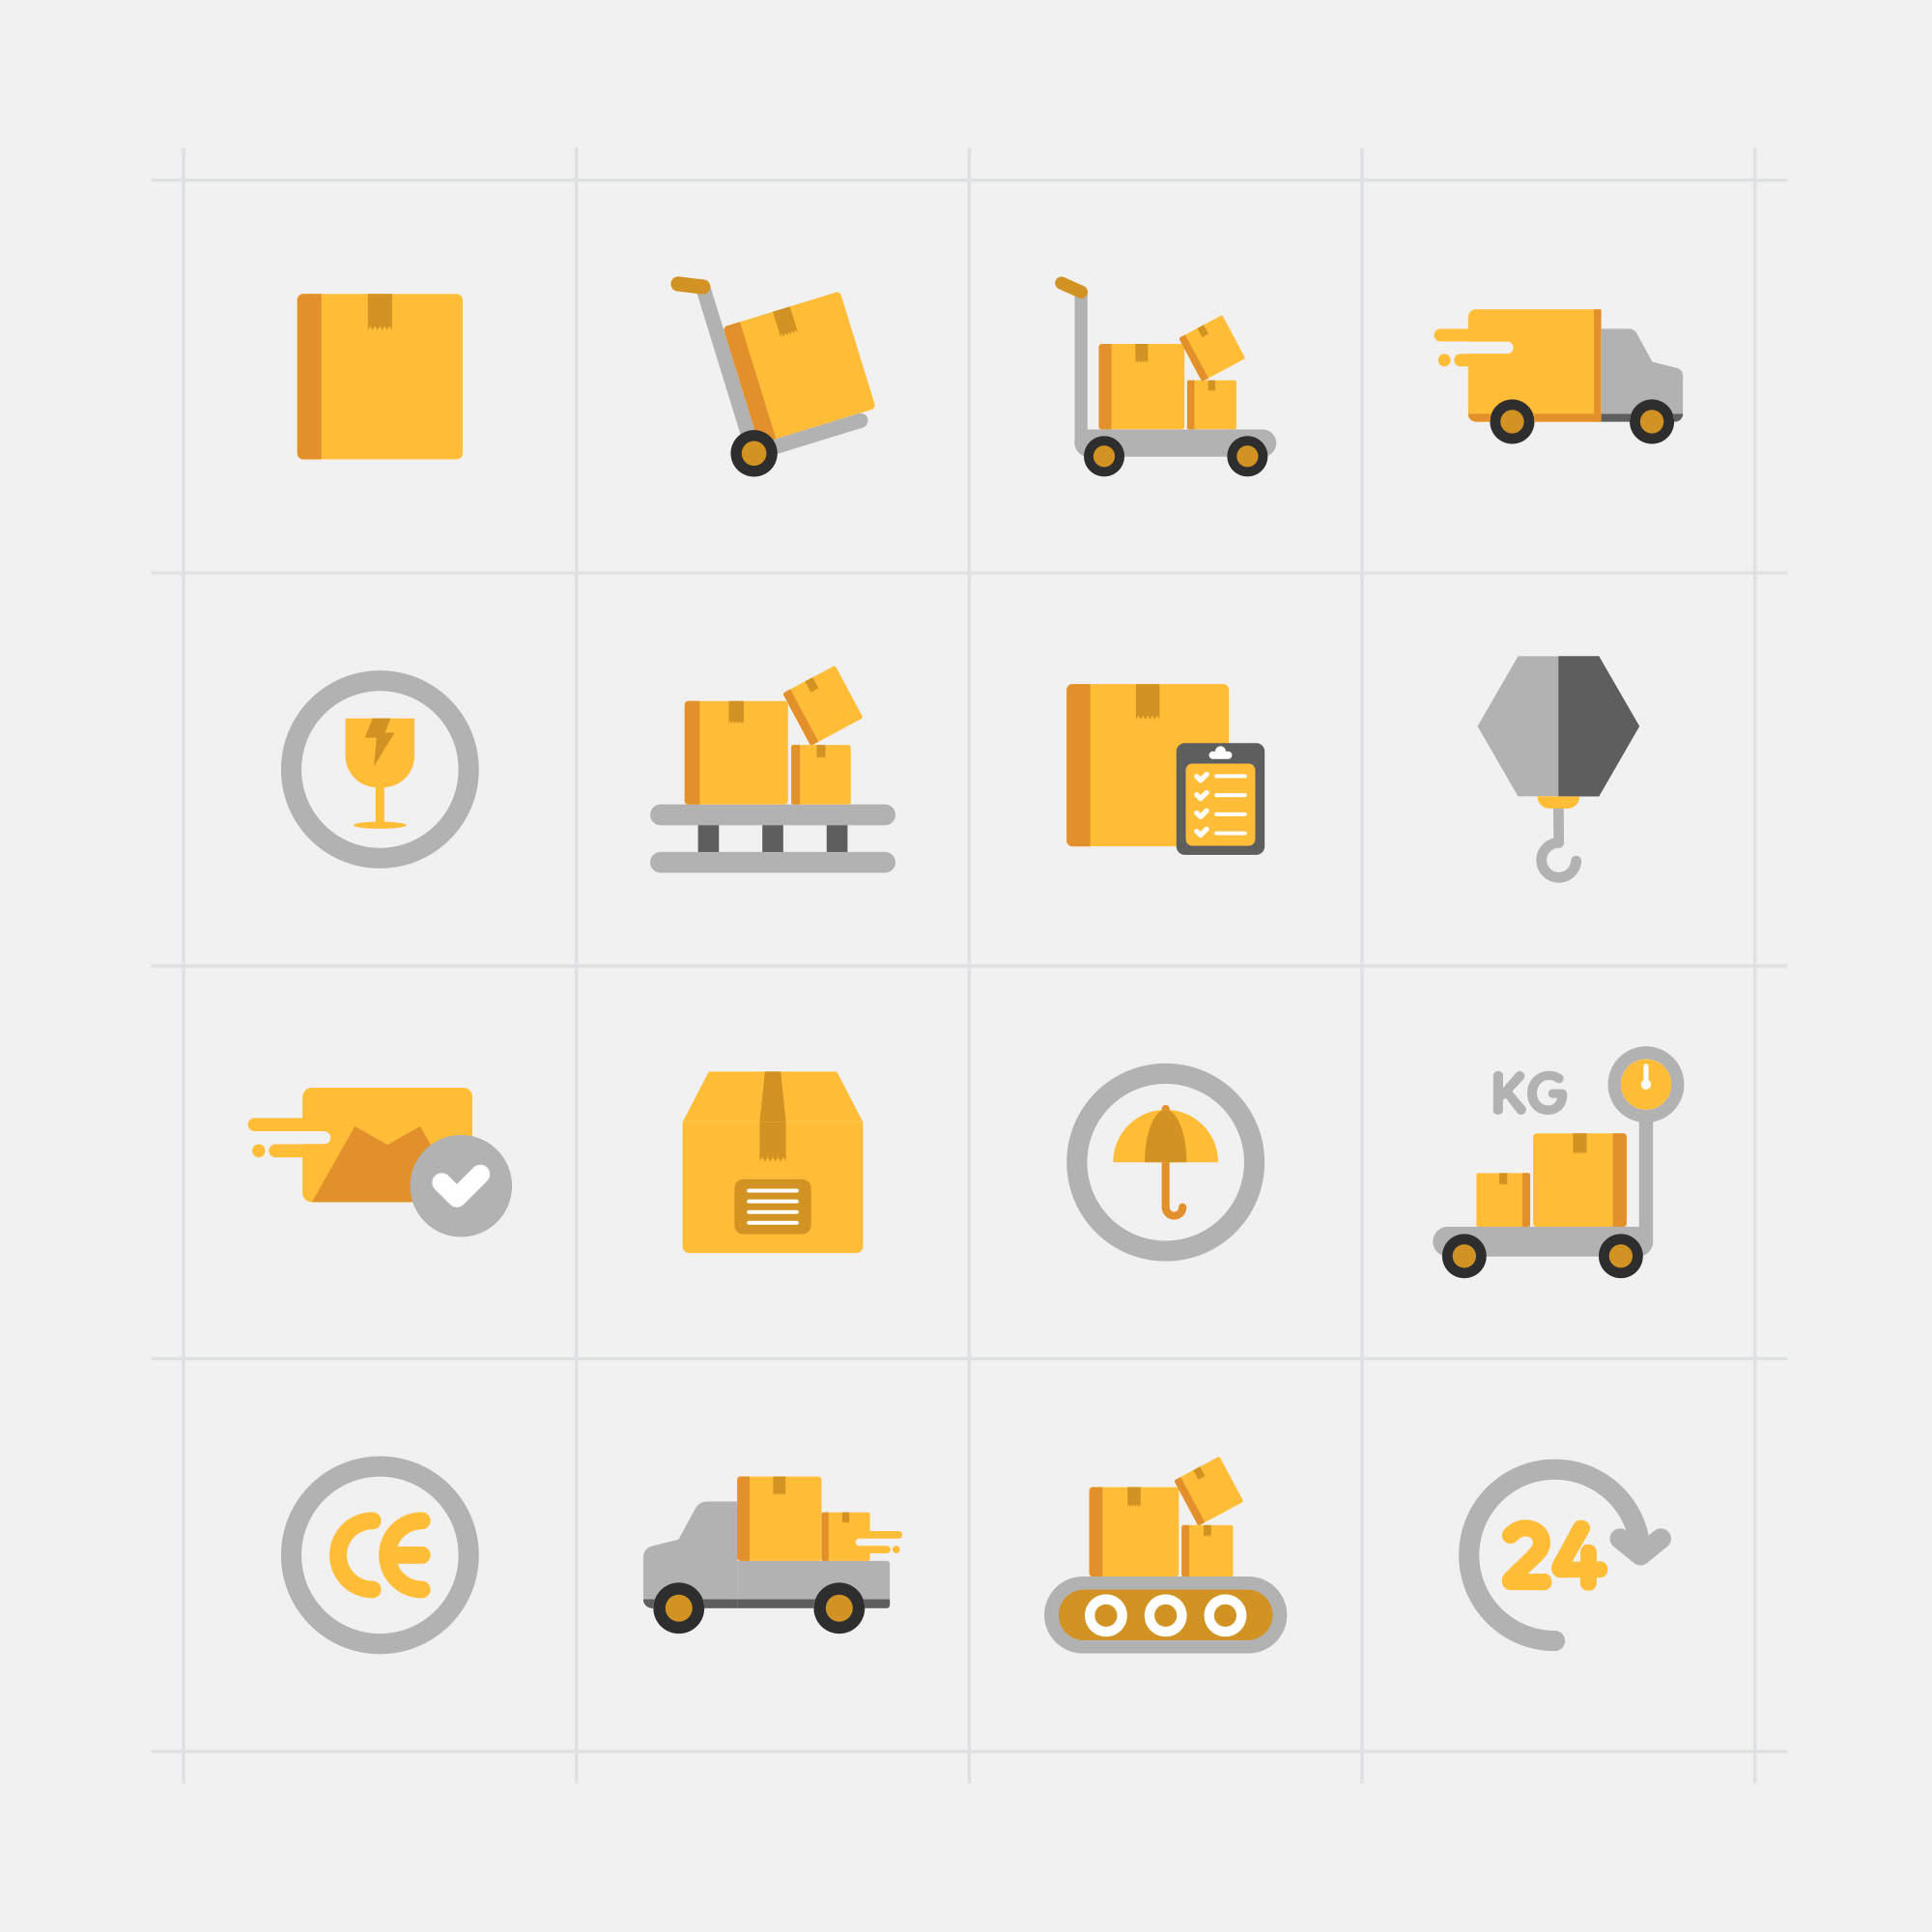 16枚快递配送主题矢量彩色第一素材精选图标 16 Delivery Vector Icons插图